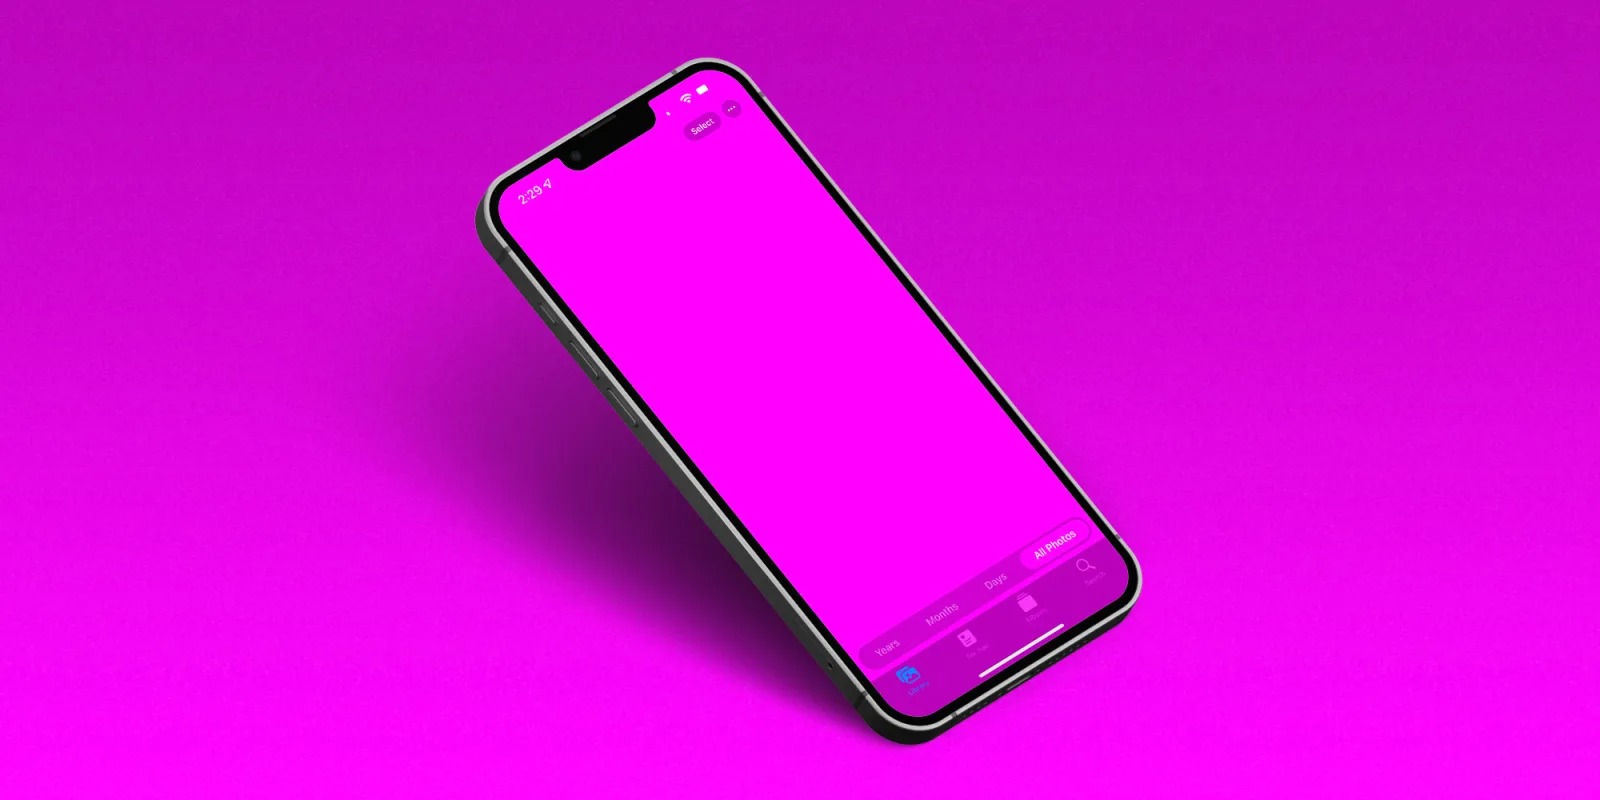 Hướng dẫn sửa lỗi màn hình iPhone 13 chuyển sang màu hồng